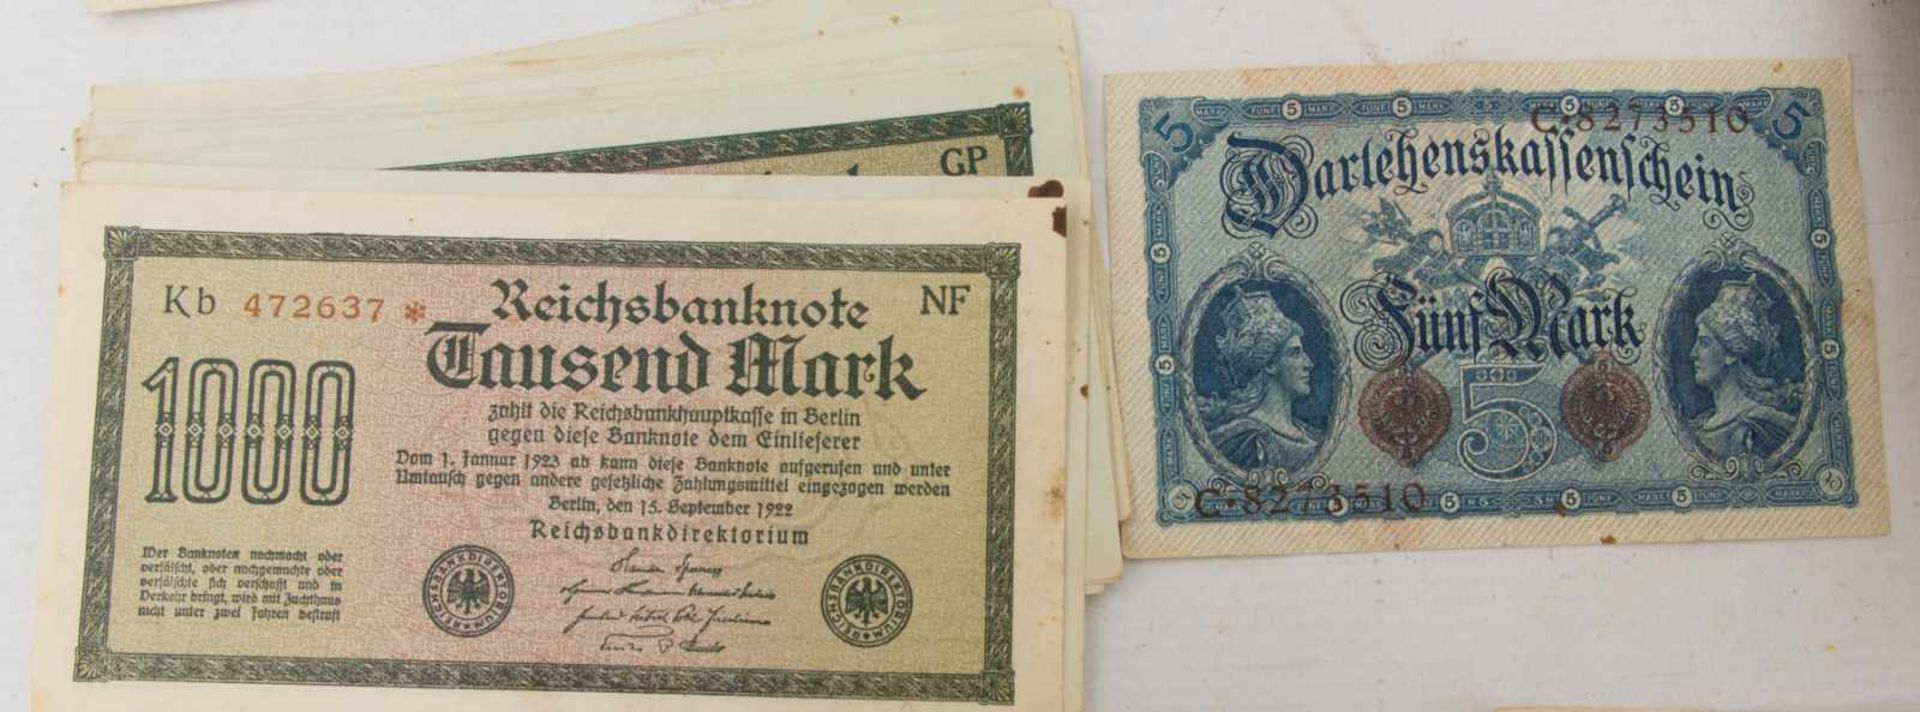 KONVOLUT ALTE BANKNOTEN, bedrucktes Papier, Deutsches Reich um 1910-1925Verschiedene Geldscheine aus - Bild 13 aus 13